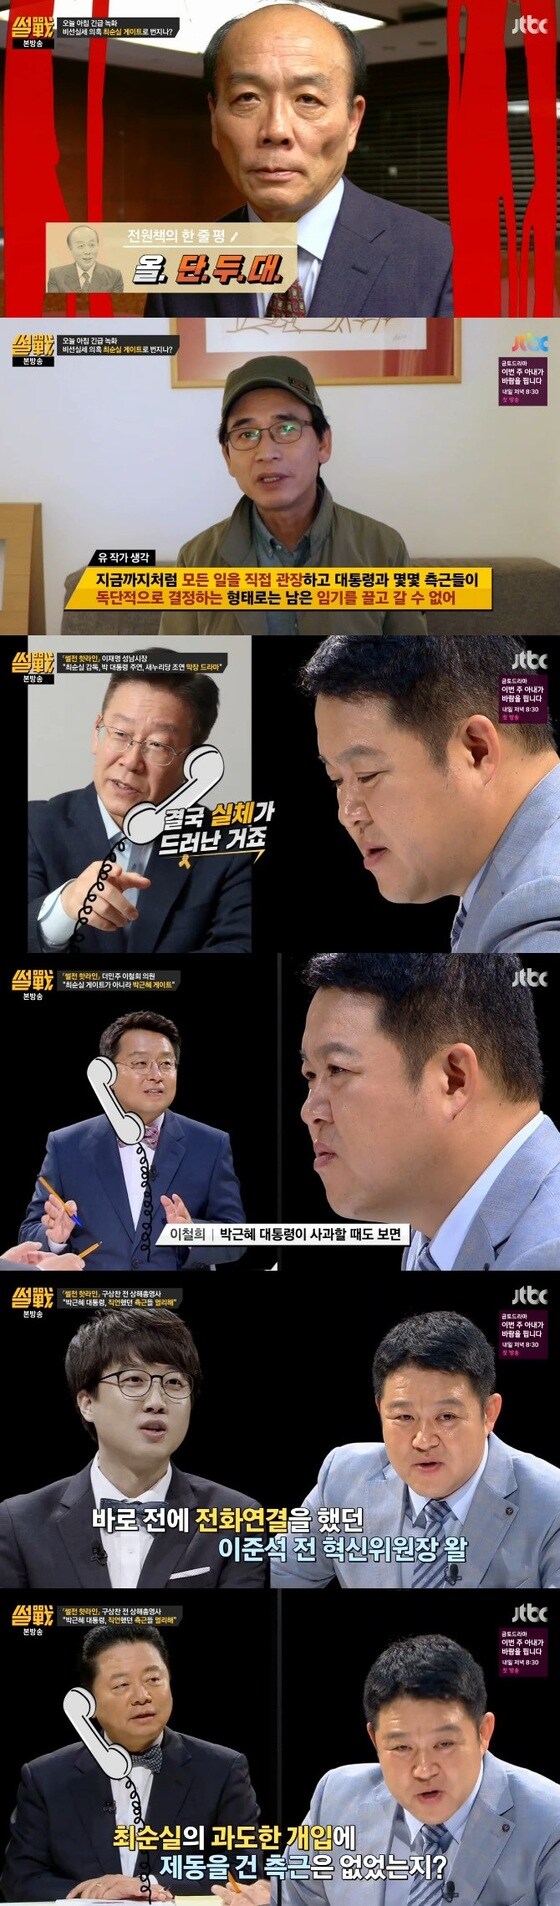 '썰전'이 최순실 게이트 관련 긴급녹화를 진행했다. © News1star / JTBC '썰전' 캡처 